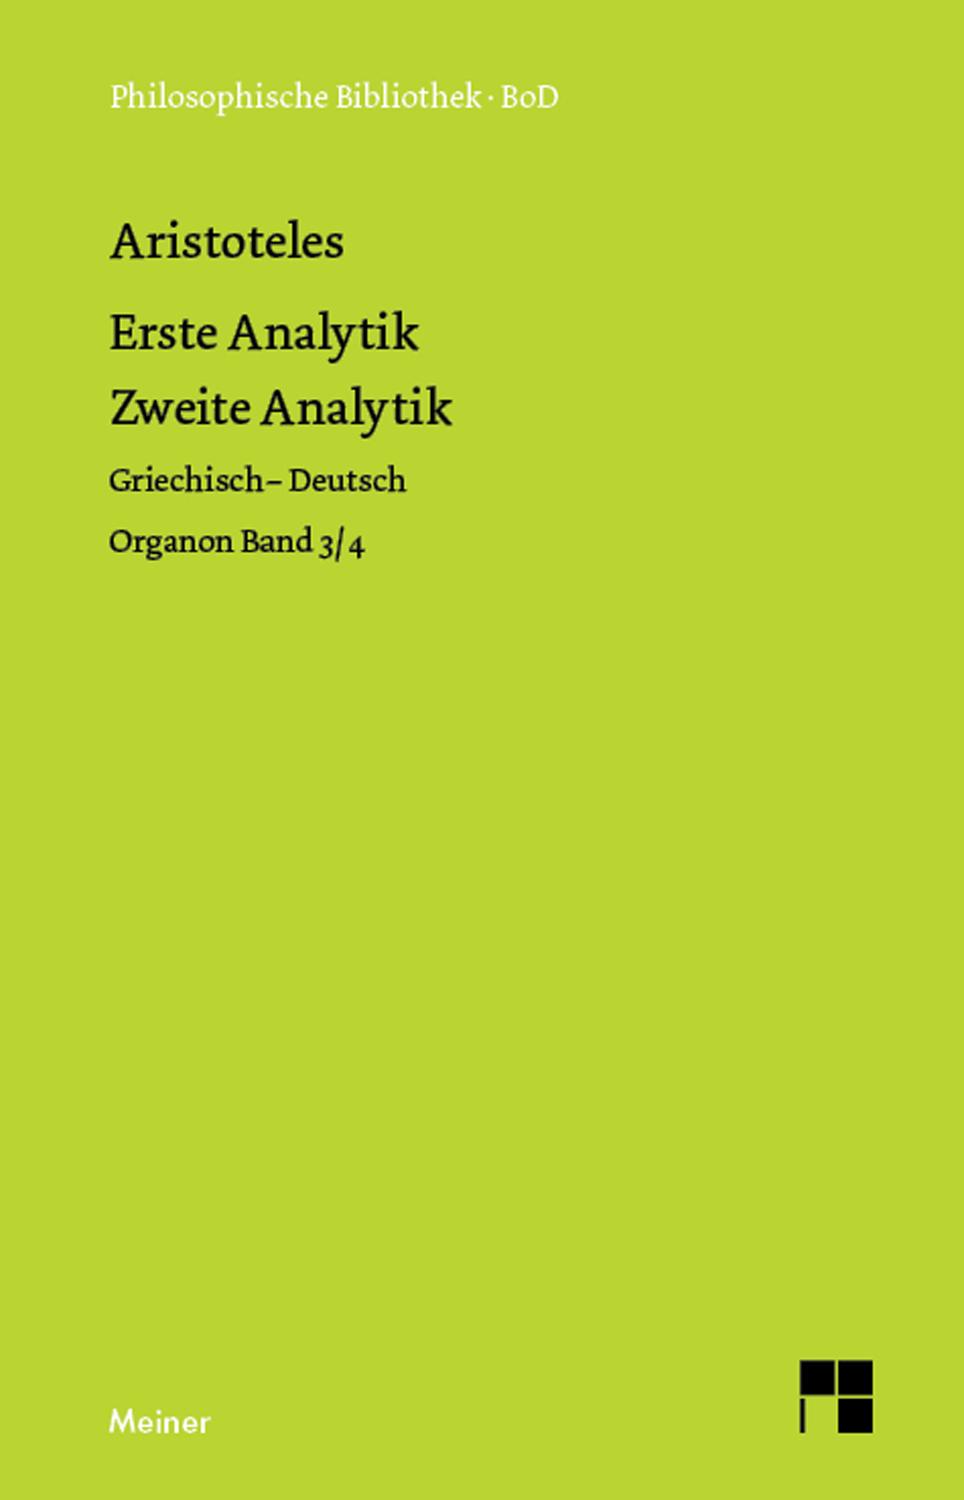 Erste Analytik. Zweite Analytik Organon Band 3/4. Zweisprachige Ausgabe